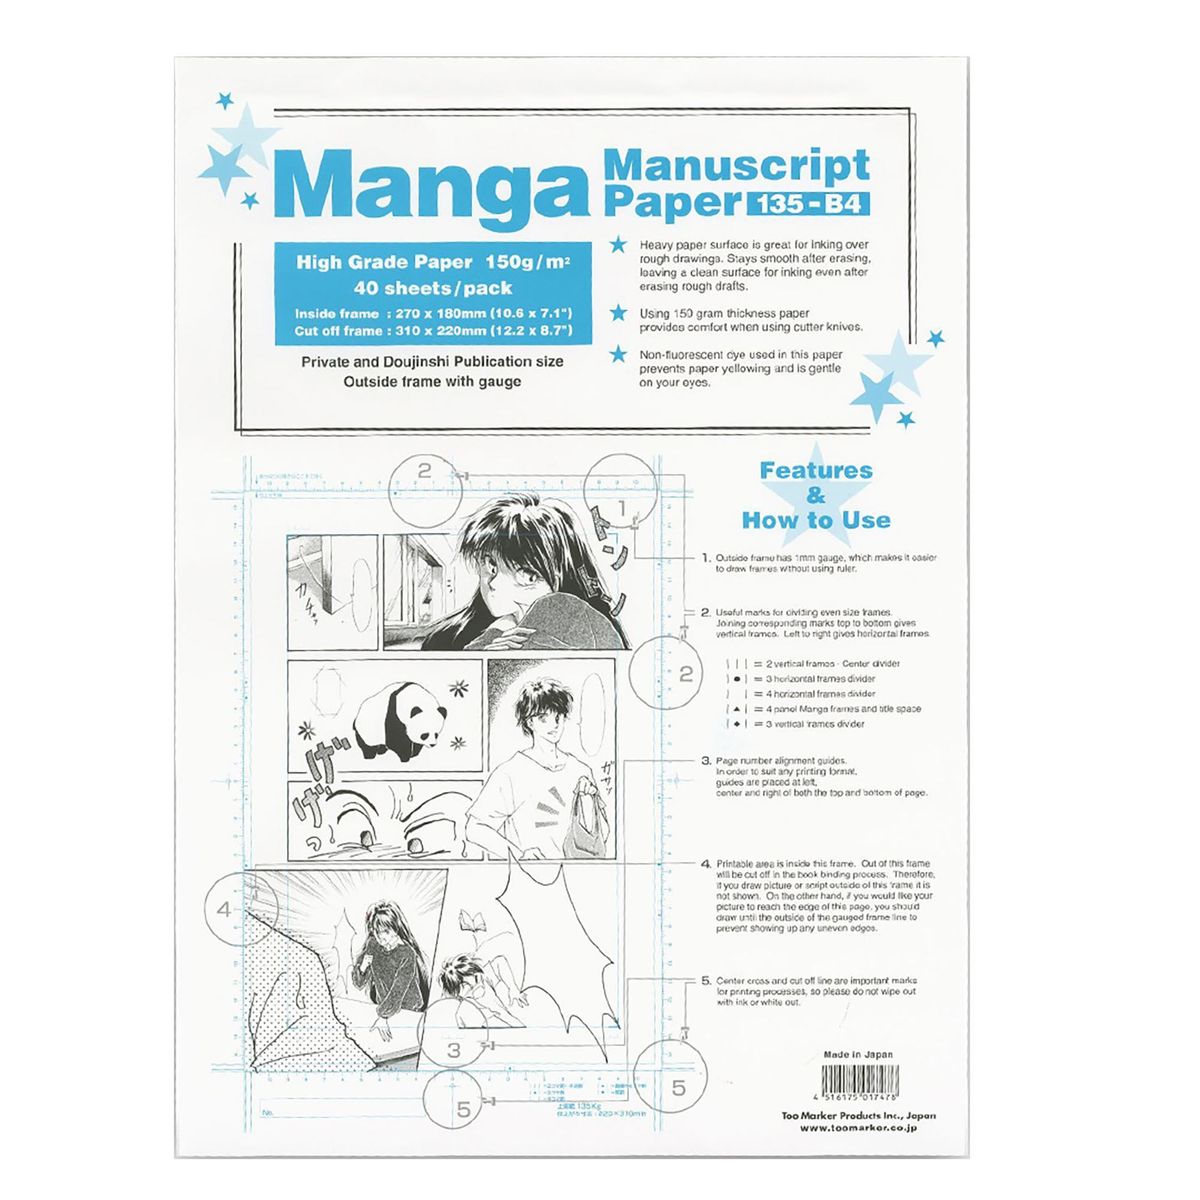 Papel Copic Mangá Manuscript B4 150g/m² 40 Folhas